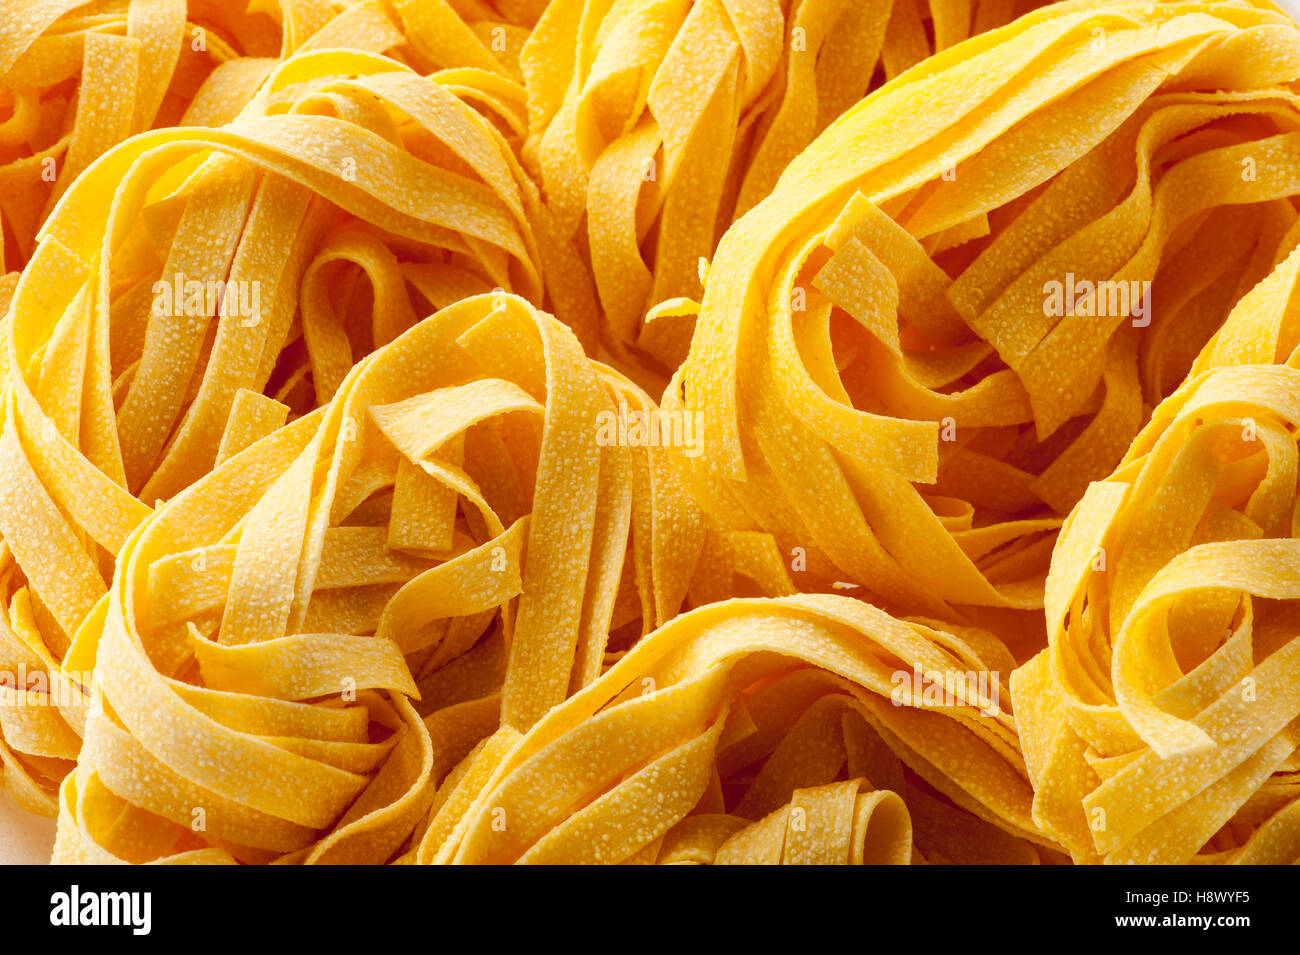 Cerca de fideos fideos pasta italiana en un fotograma completo vista para alimentos o conceptos nutricionales Foto de stock